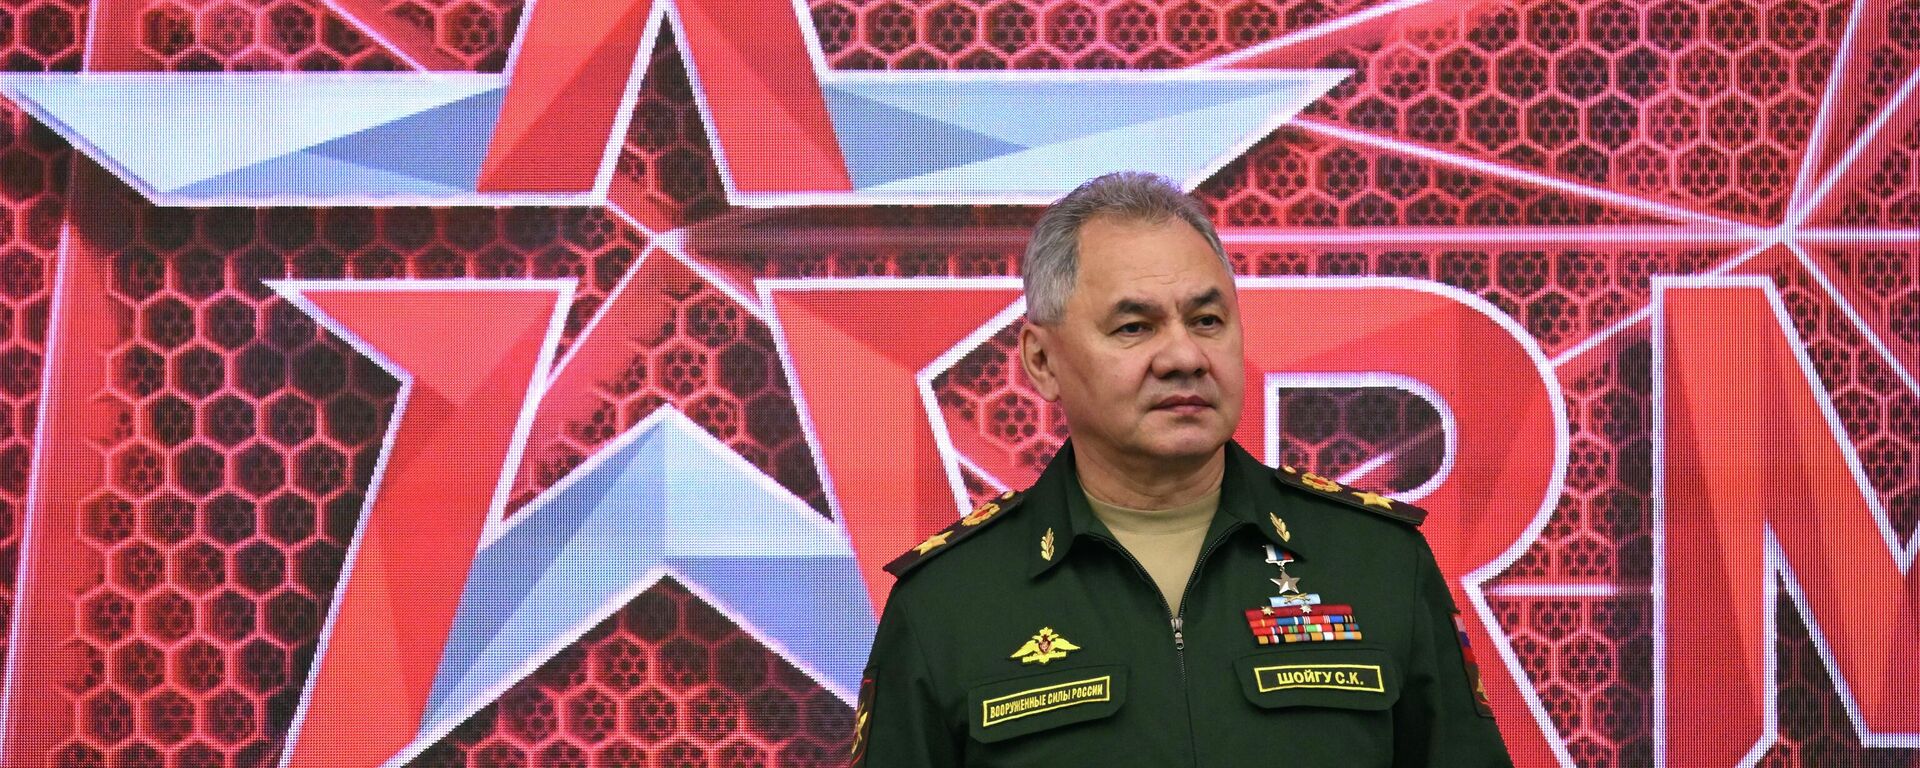 Bộ trưởng Quốc phòng Nga Sergei Shoigu tại Diễn đàn Kỹ thuật-Quân sự Quốc tế ARMY-2023 tại Trung tâm Triển lãm và Hội nghị Yêu nước. - Sputnik Việt Nam, 1920, 14.08.2023